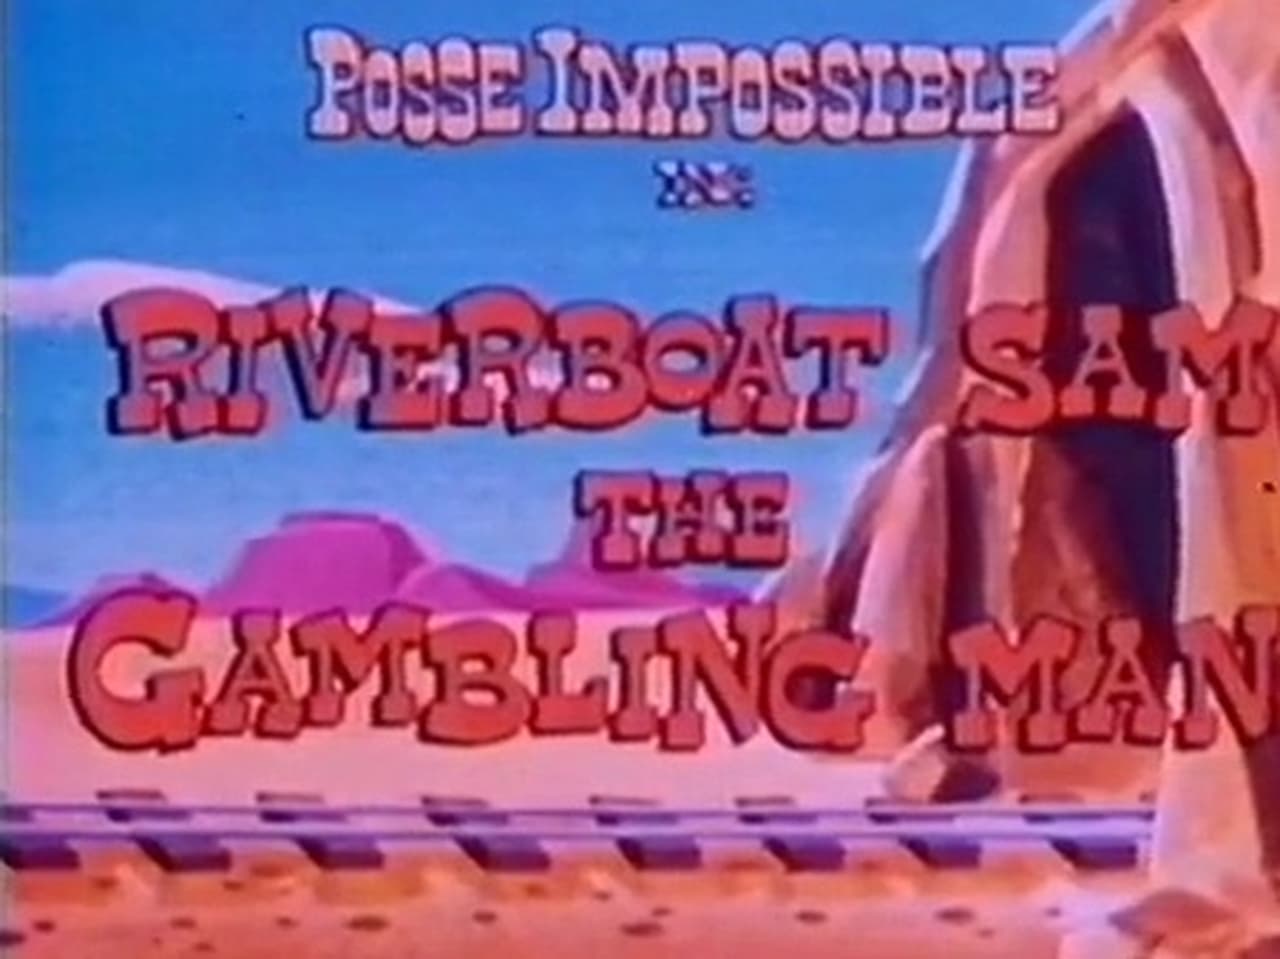 Riverboat Sam the Gambling Man